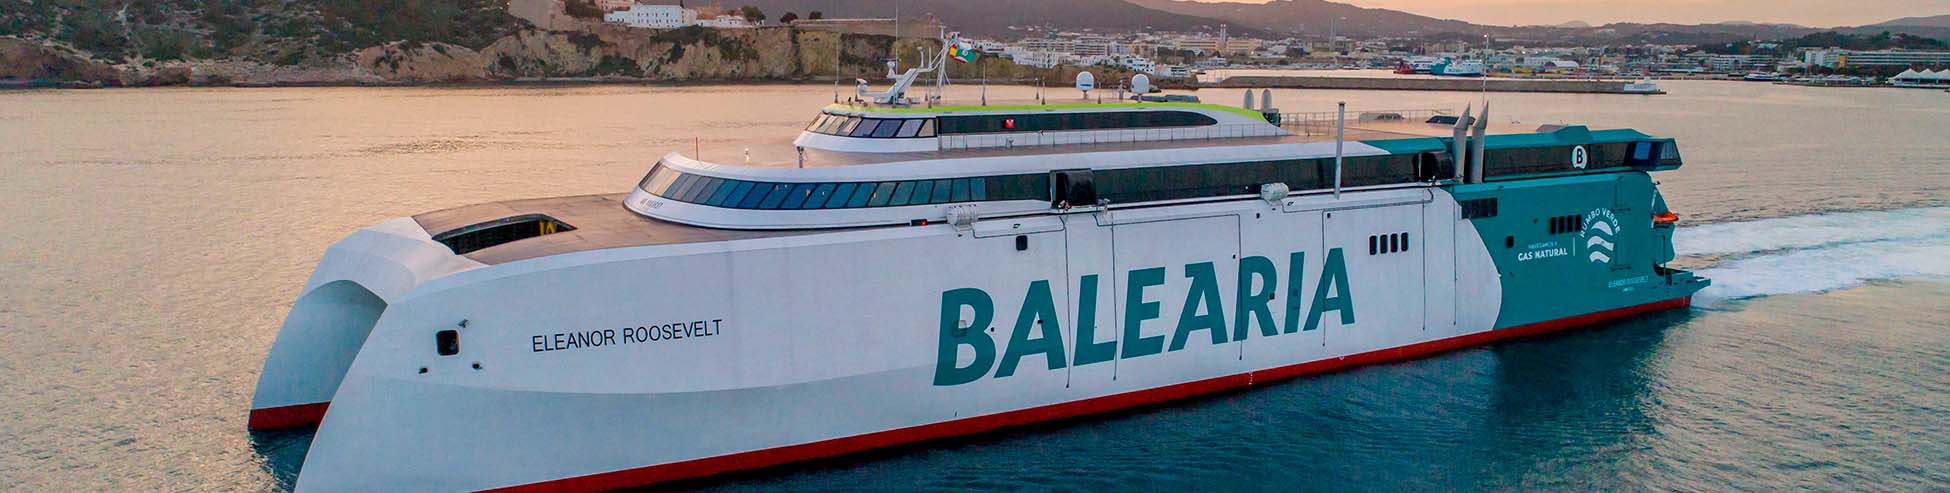 Immagine del porto di arrivo Denia per la rotta traghetto Formentera - Denia